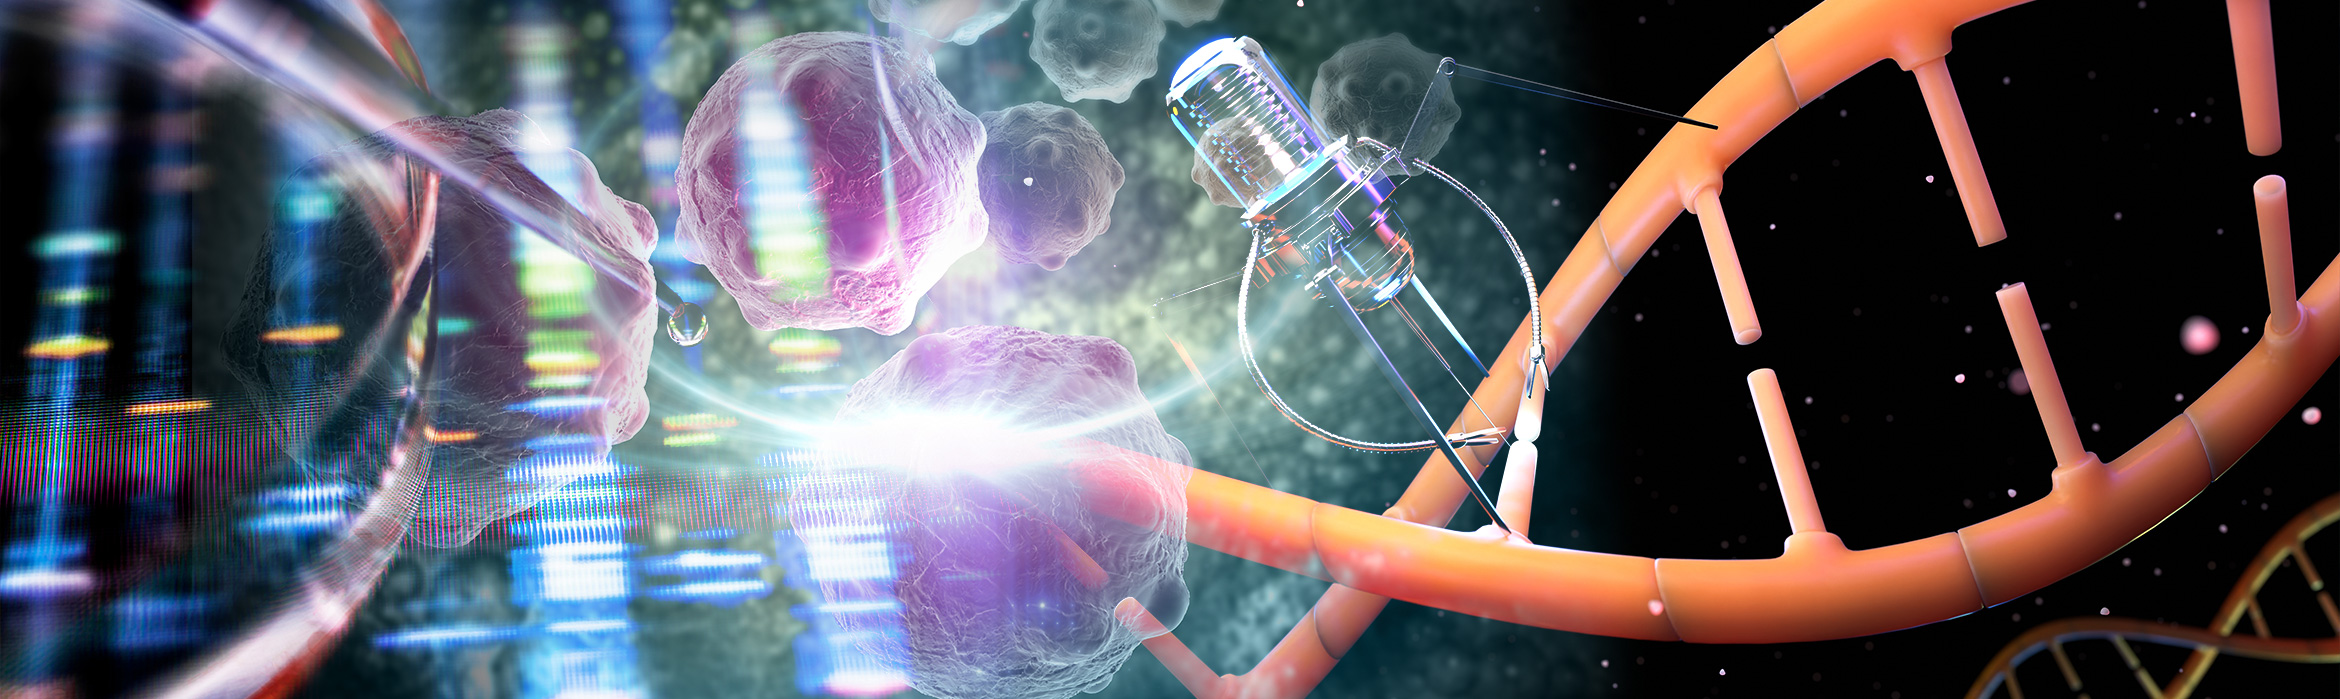 Composición de imágenes sobre biomedicina regenerativa